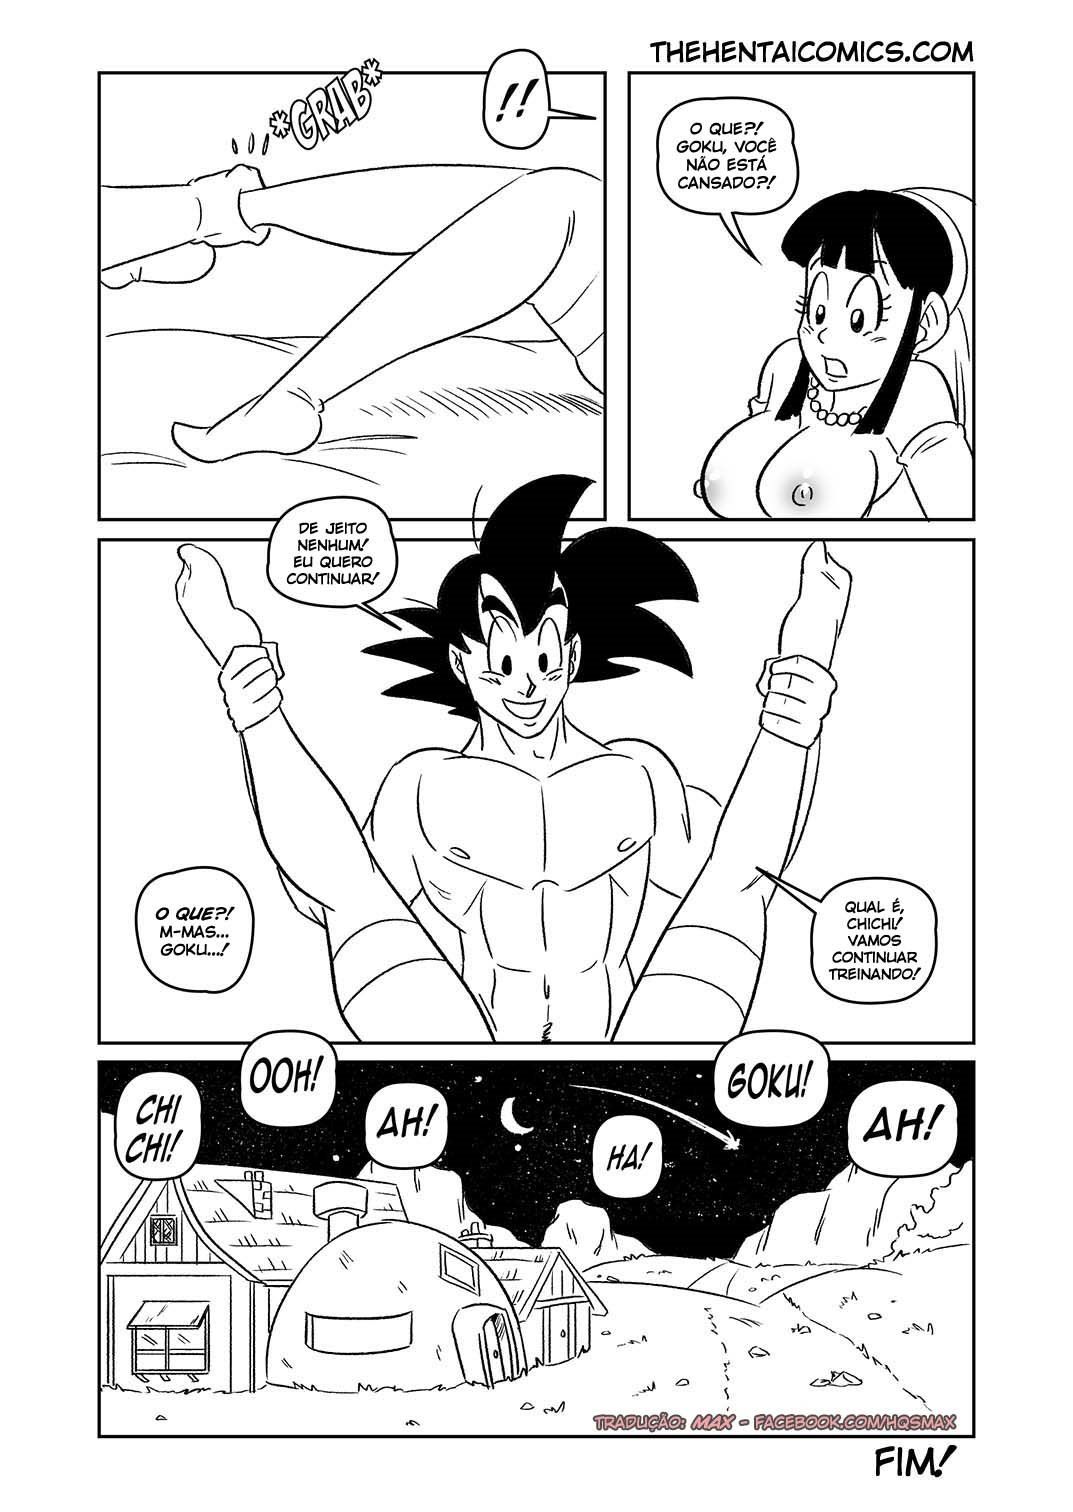 Quadrinhos Eroticos - Goku e Chichi em lua de mel - DBZ Hentai